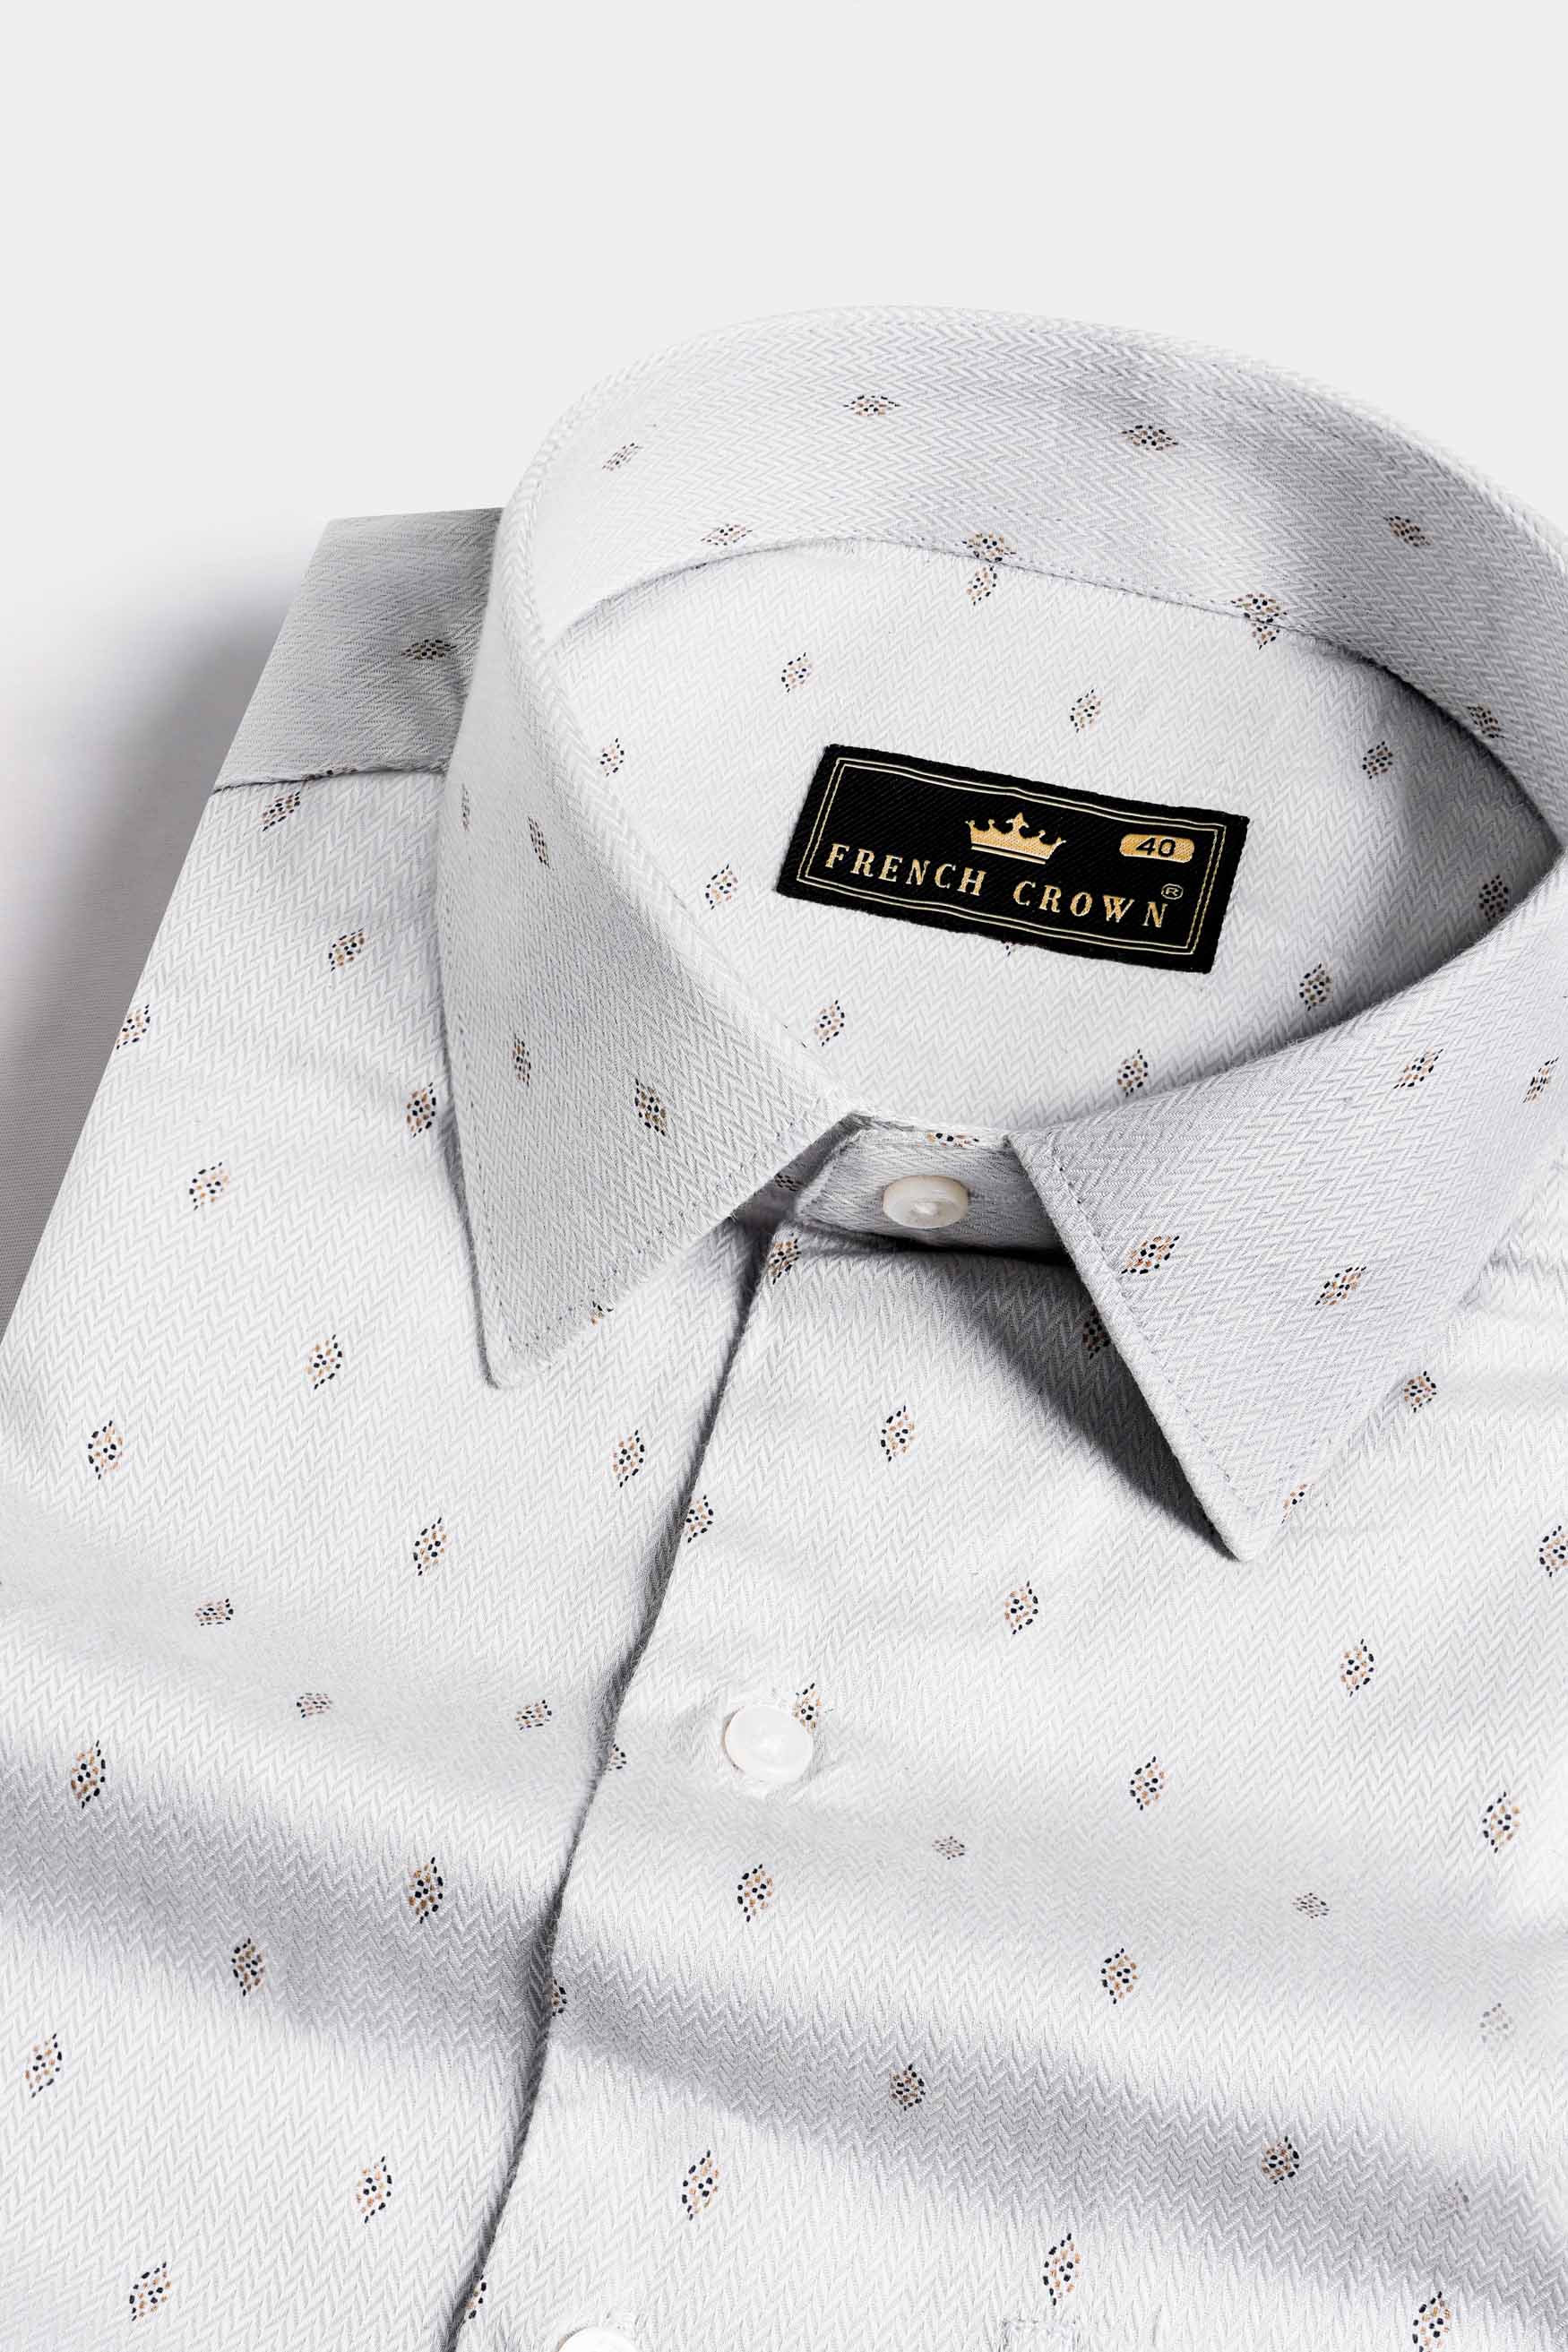 Gainsboro Gray Textured Herringbone Premium Cotton Shirt